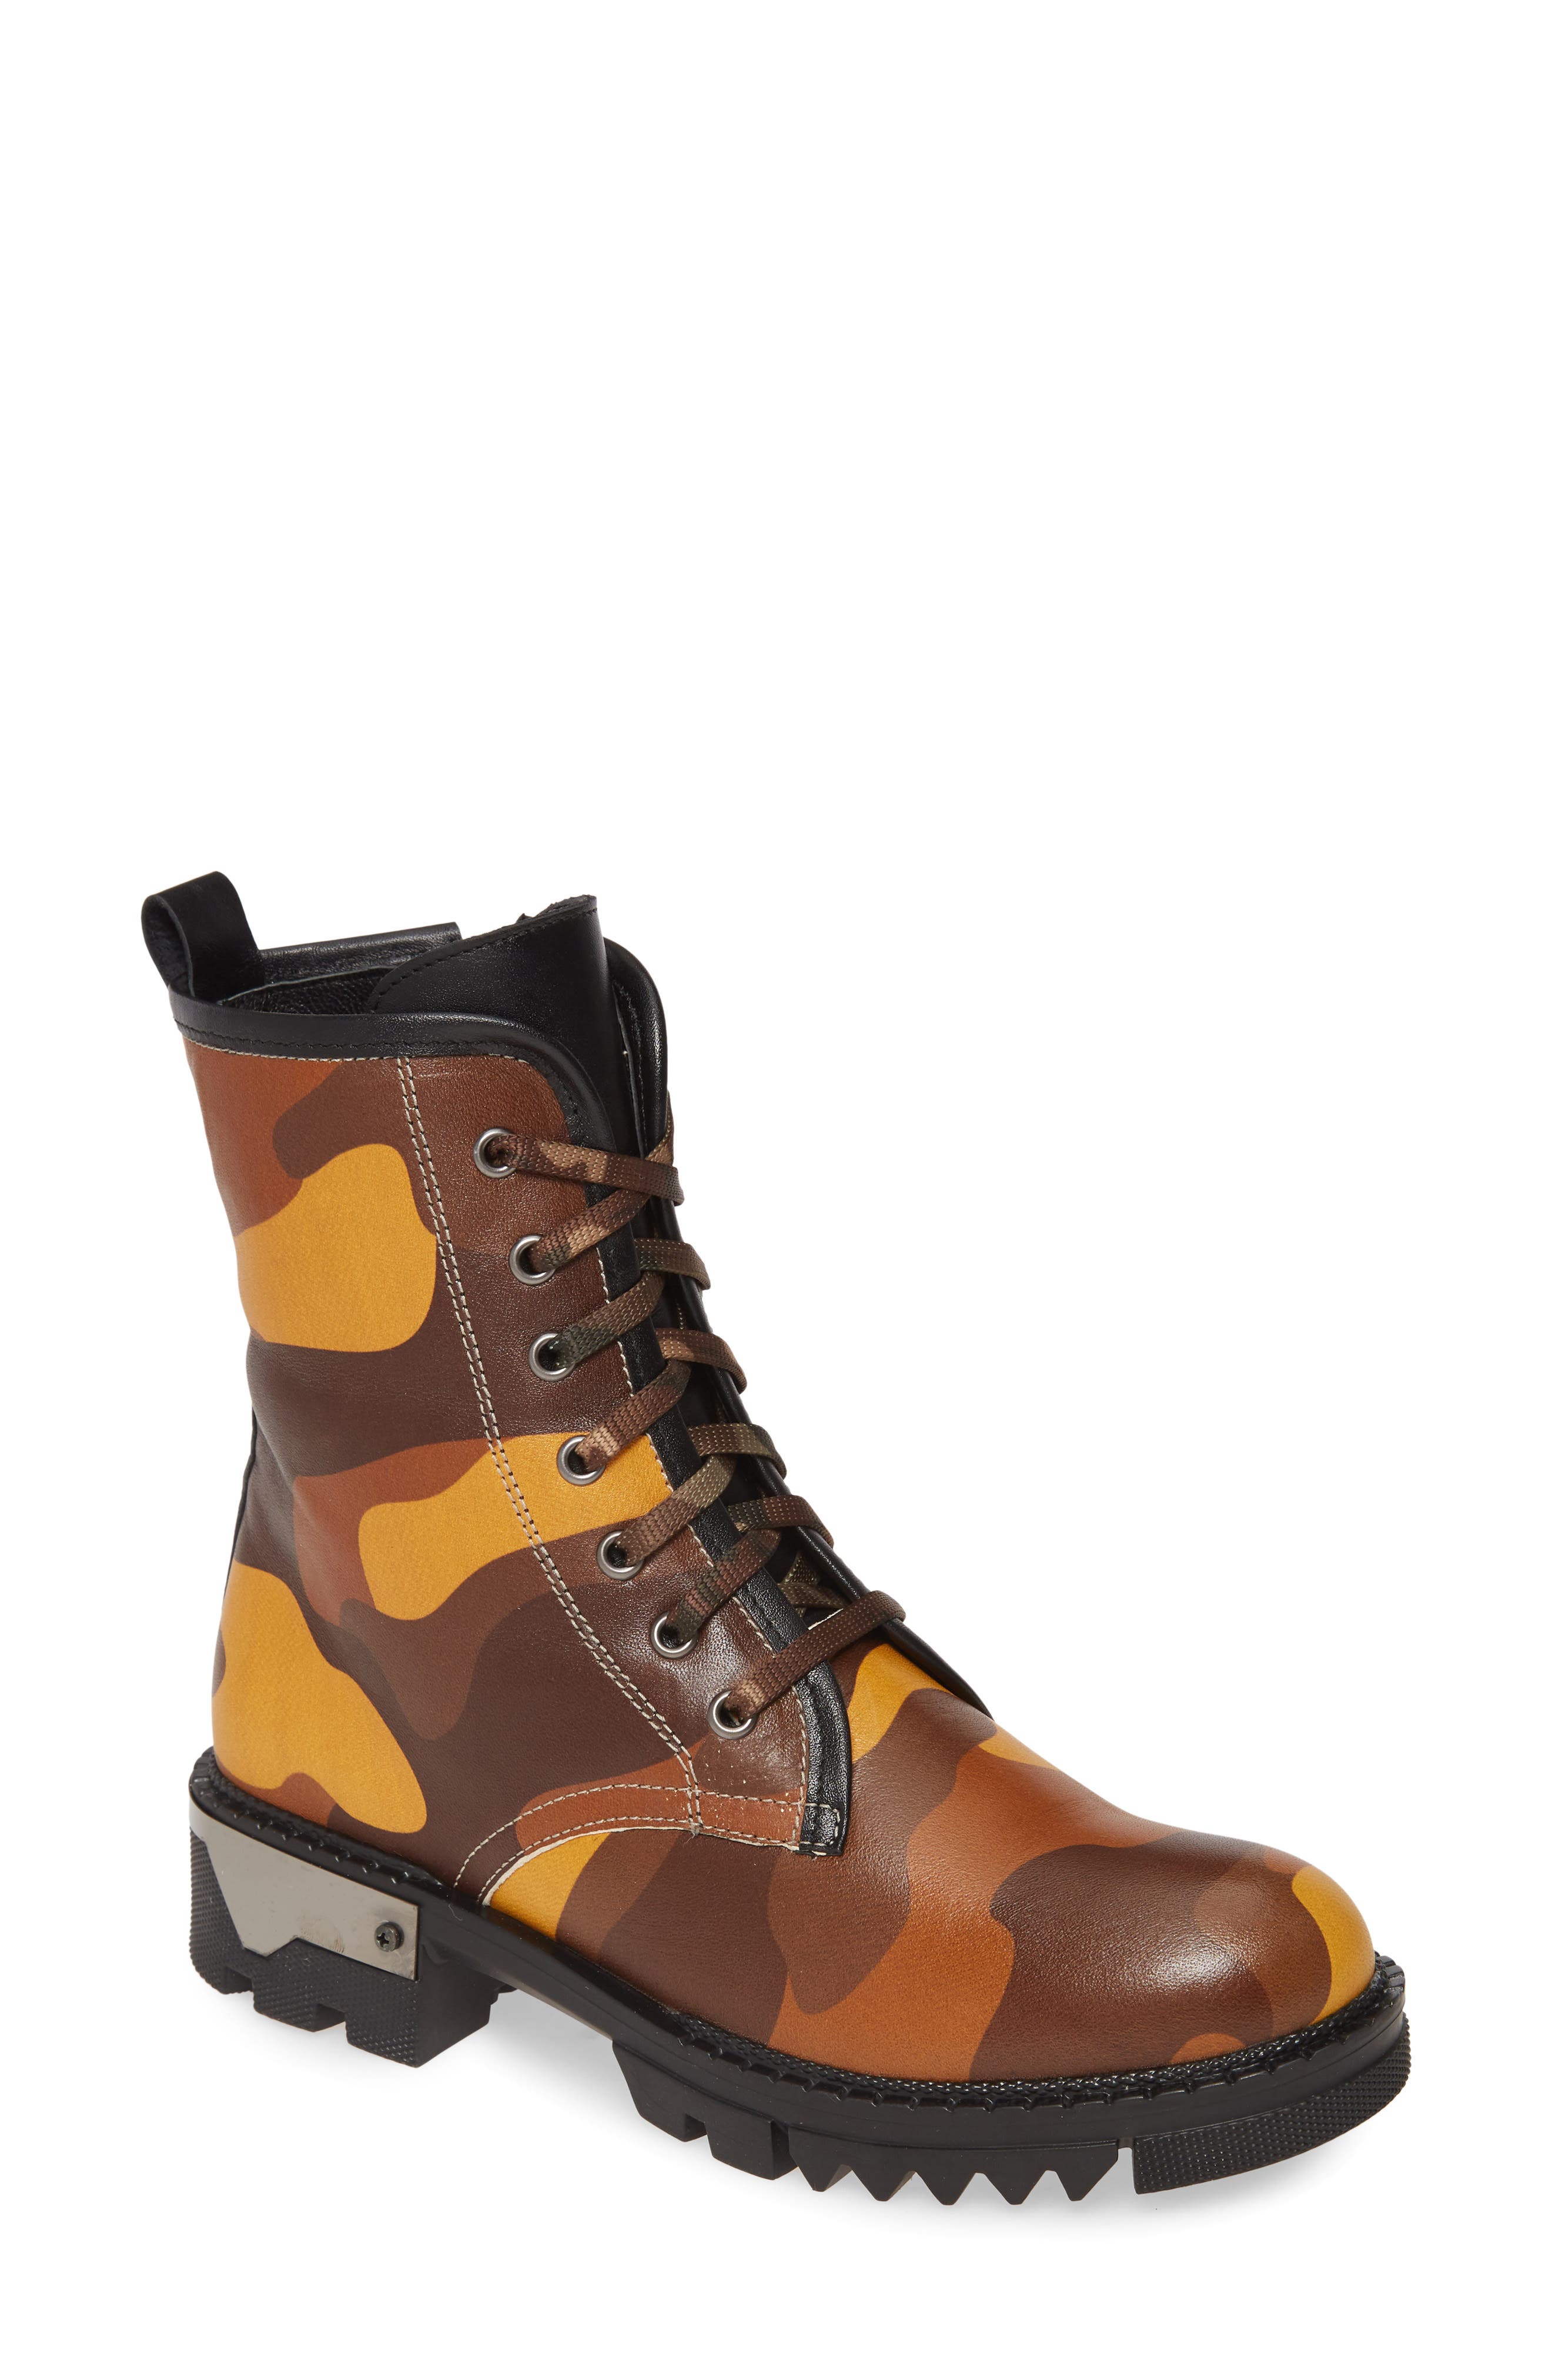 mia hiking boots